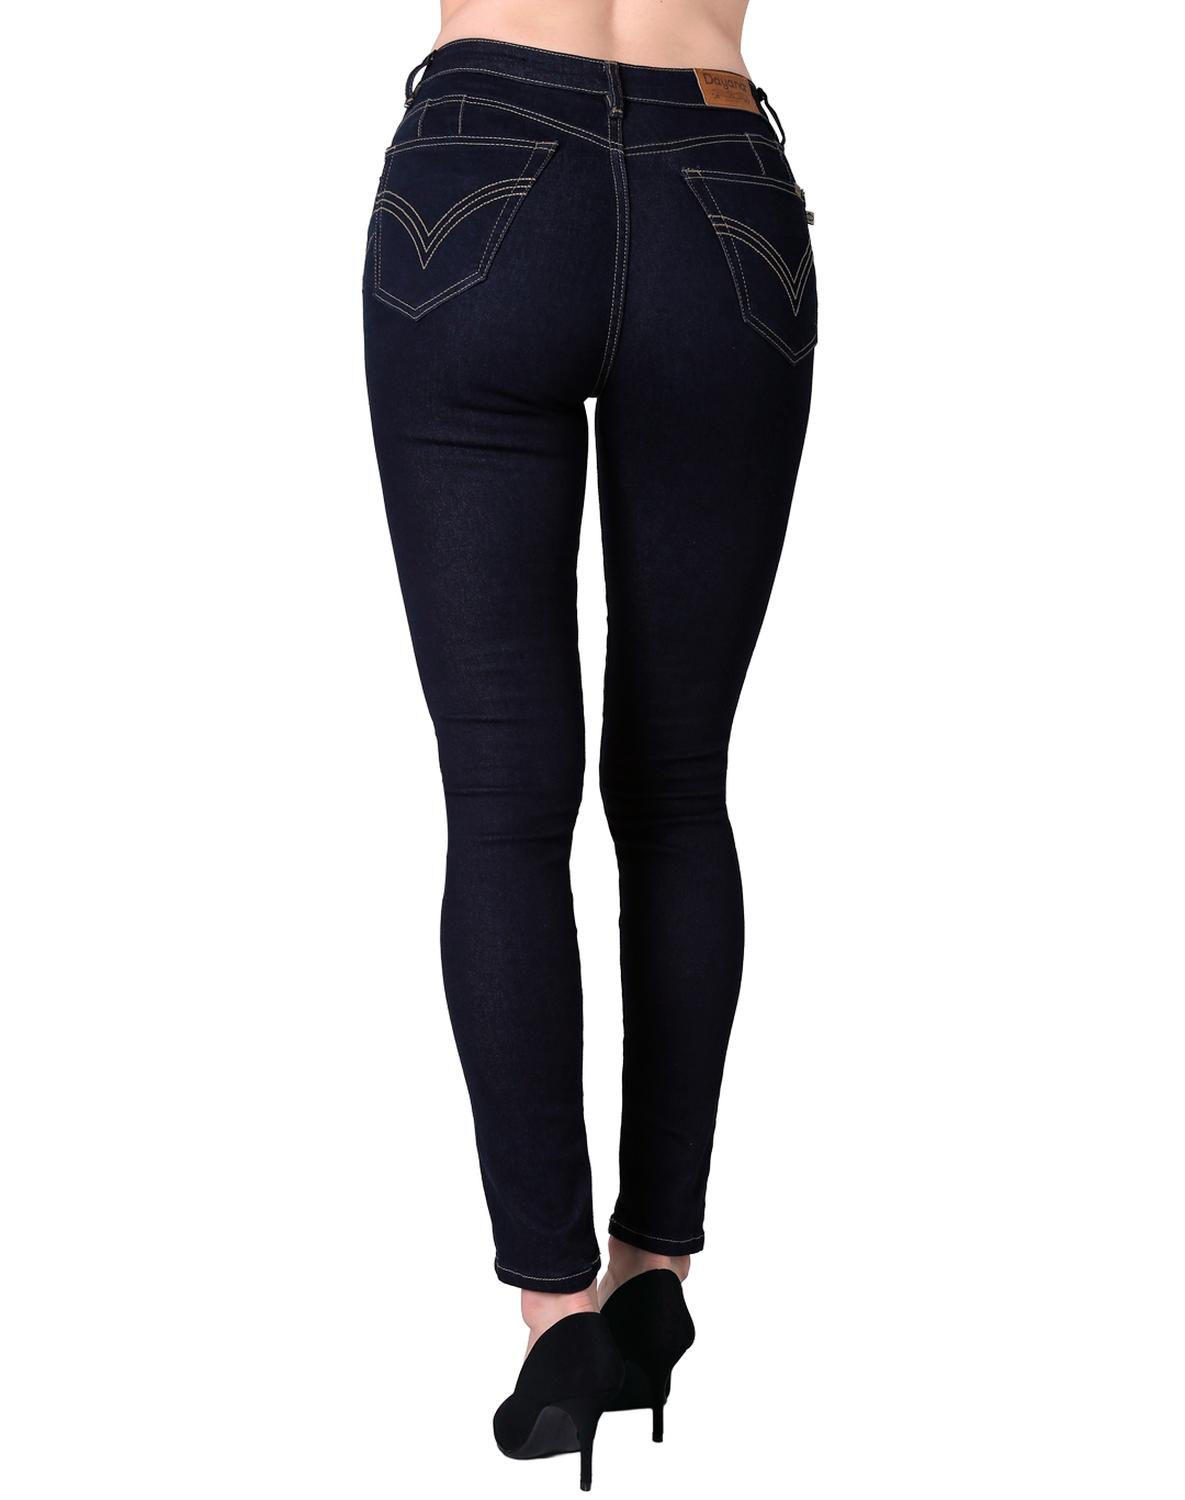 Jeans Básico Mujer Dayana 16 50803604 Mezclilla Stretch